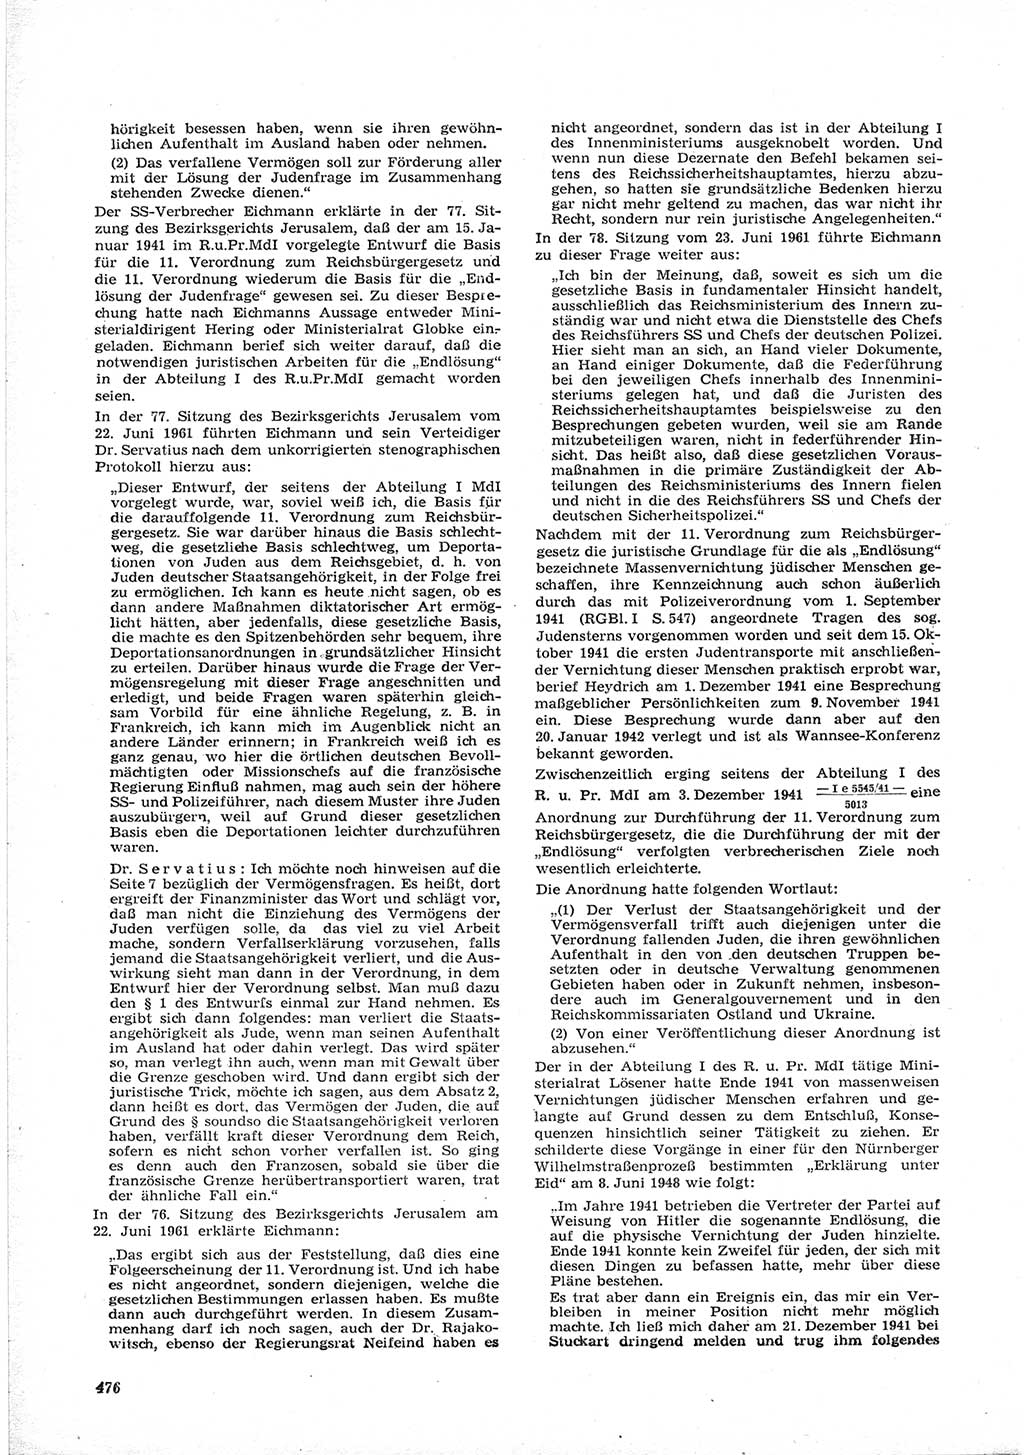 Neue Justiz (NJ), Zeitschrift für Recht und Rechtswissenschaft [Deutsche Demokratische Republik (DDR)], 17. Jahrgang 1963, Seite 476 (NJ DDR 1963, S. 476)